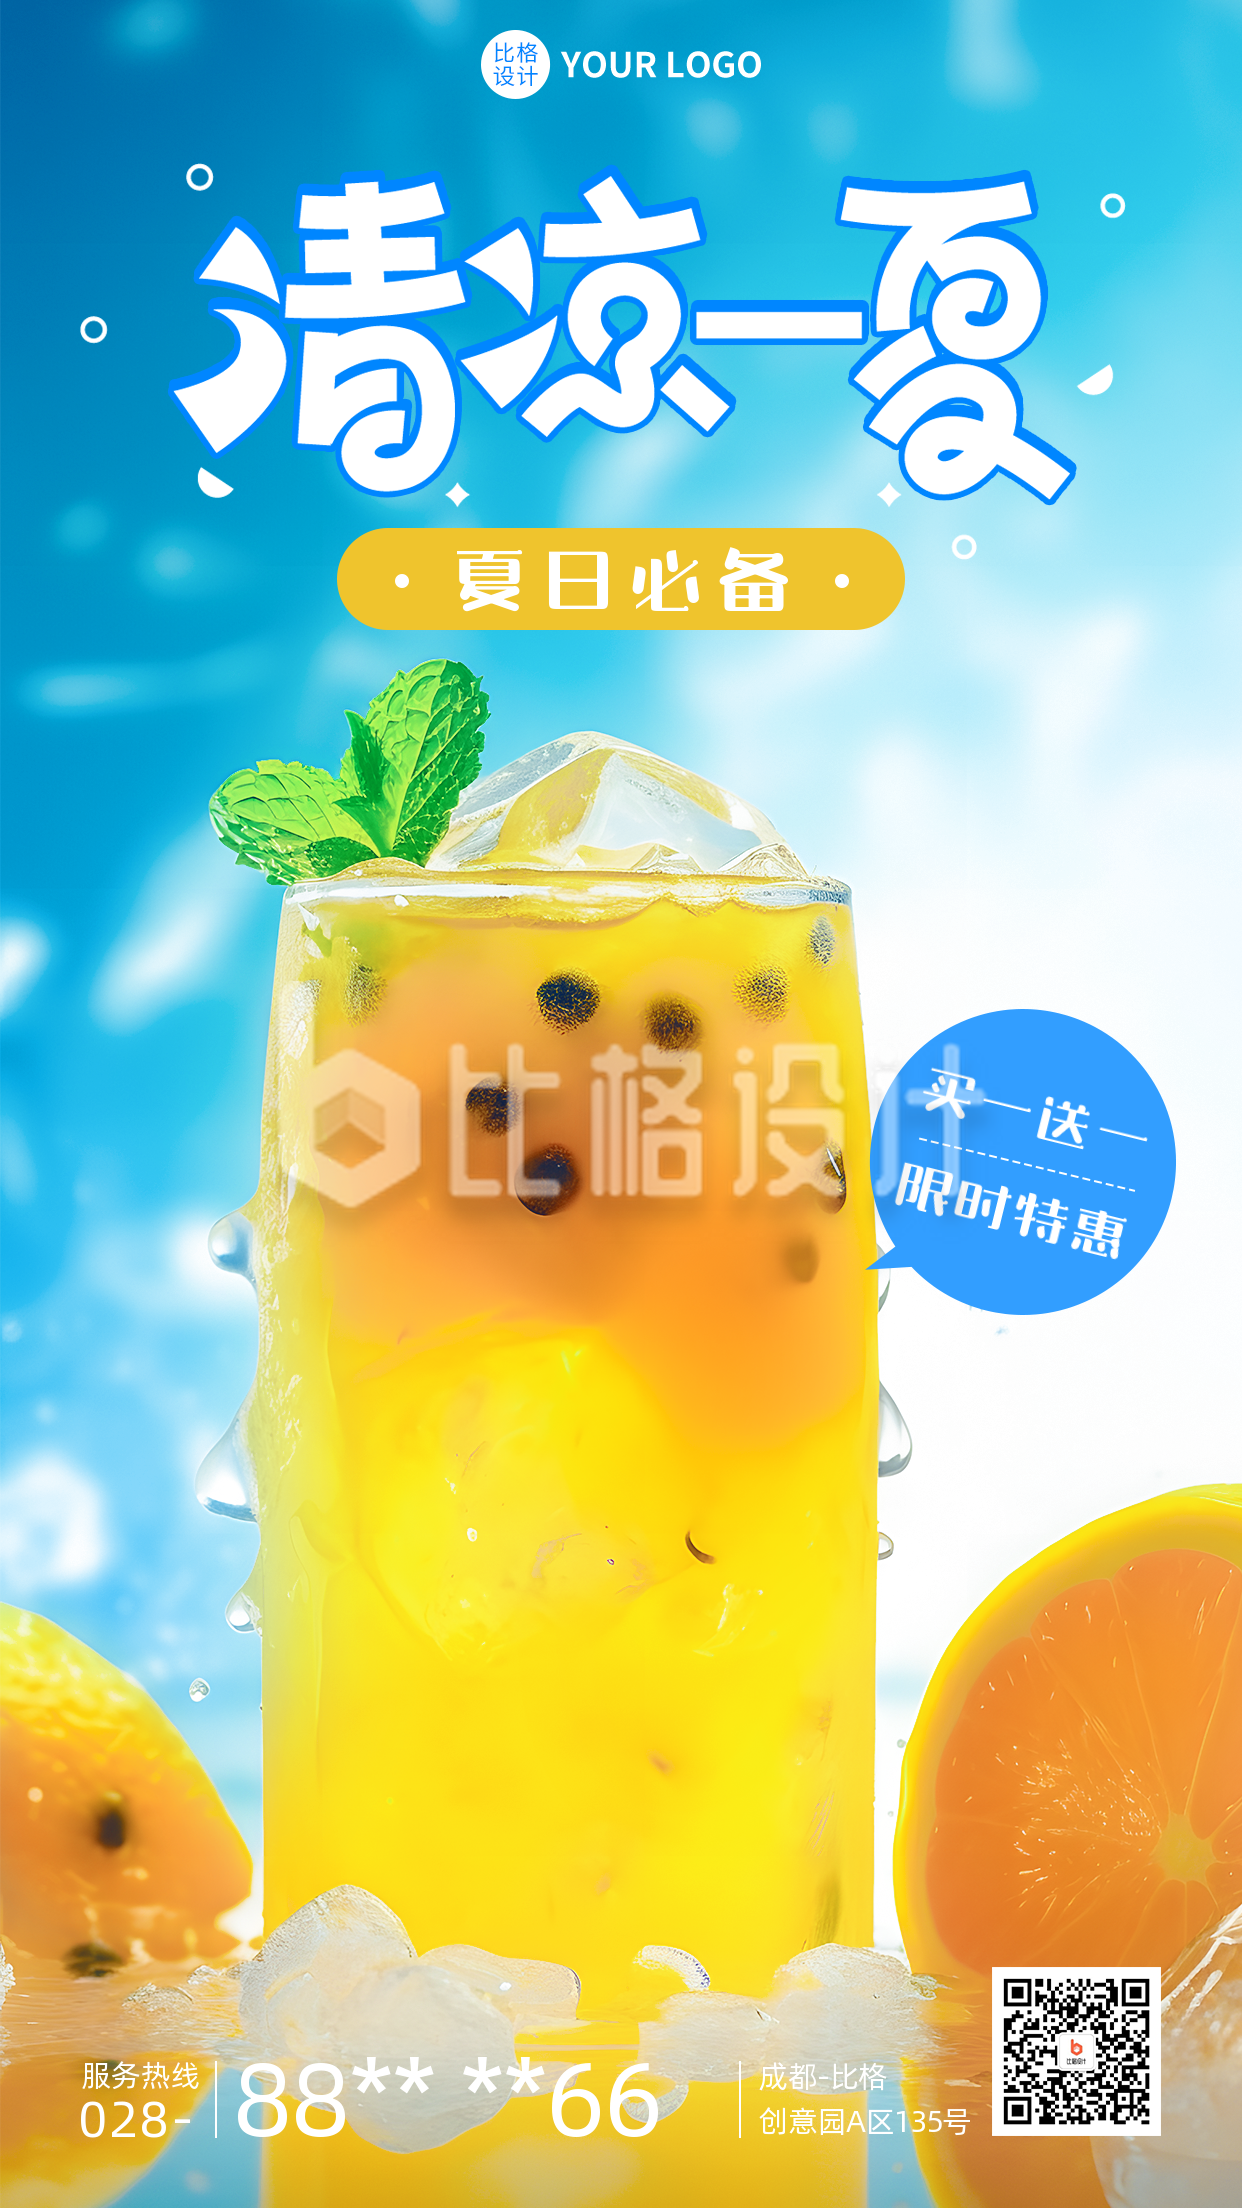 夏季饮品营销活动手机海报